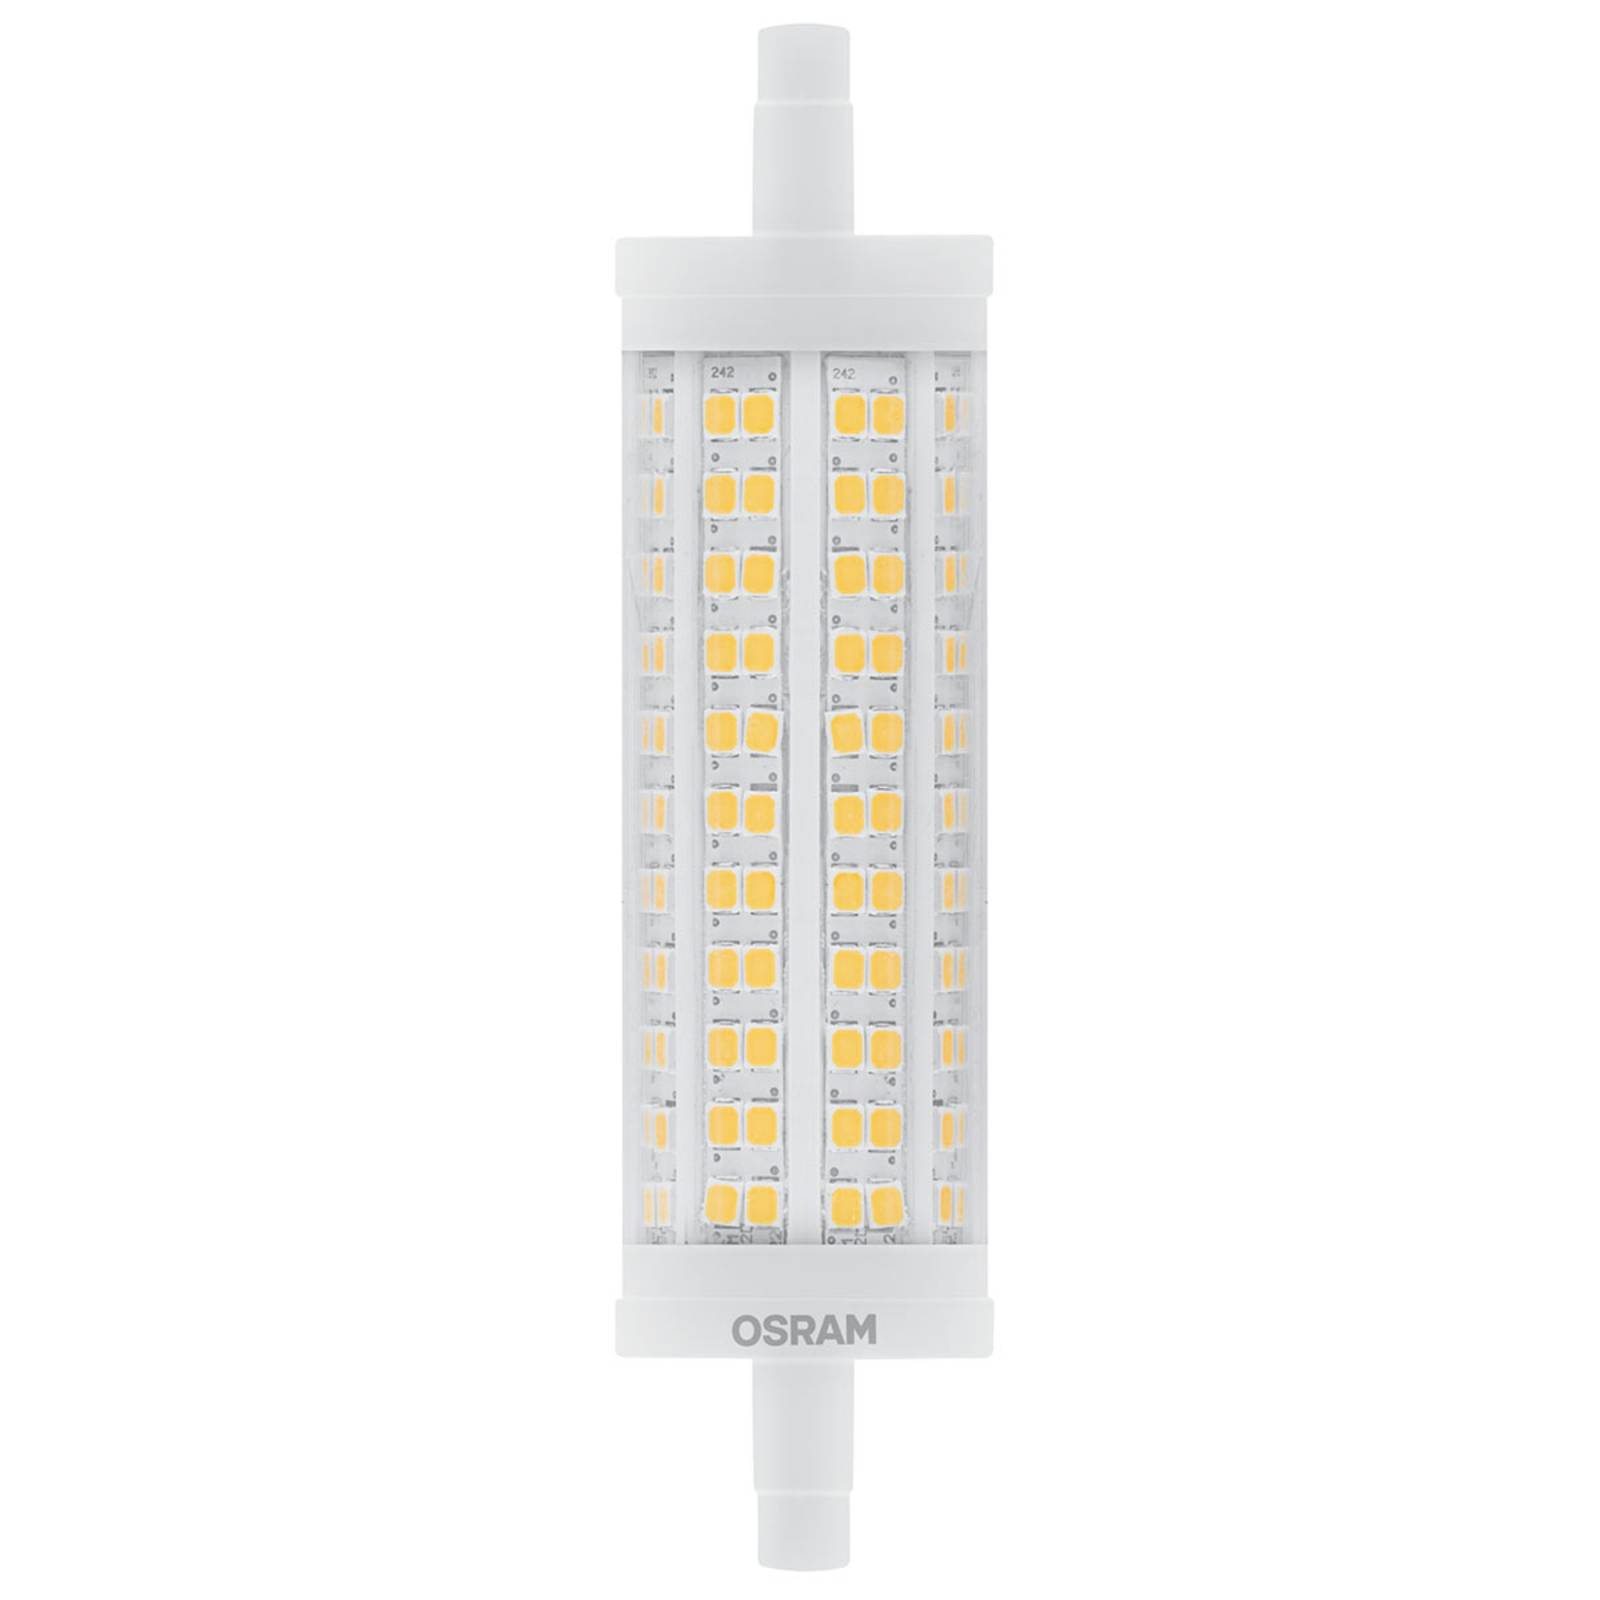 OSRAM LED-Stablampe R7s 19W warmweiß, 2.452 lm